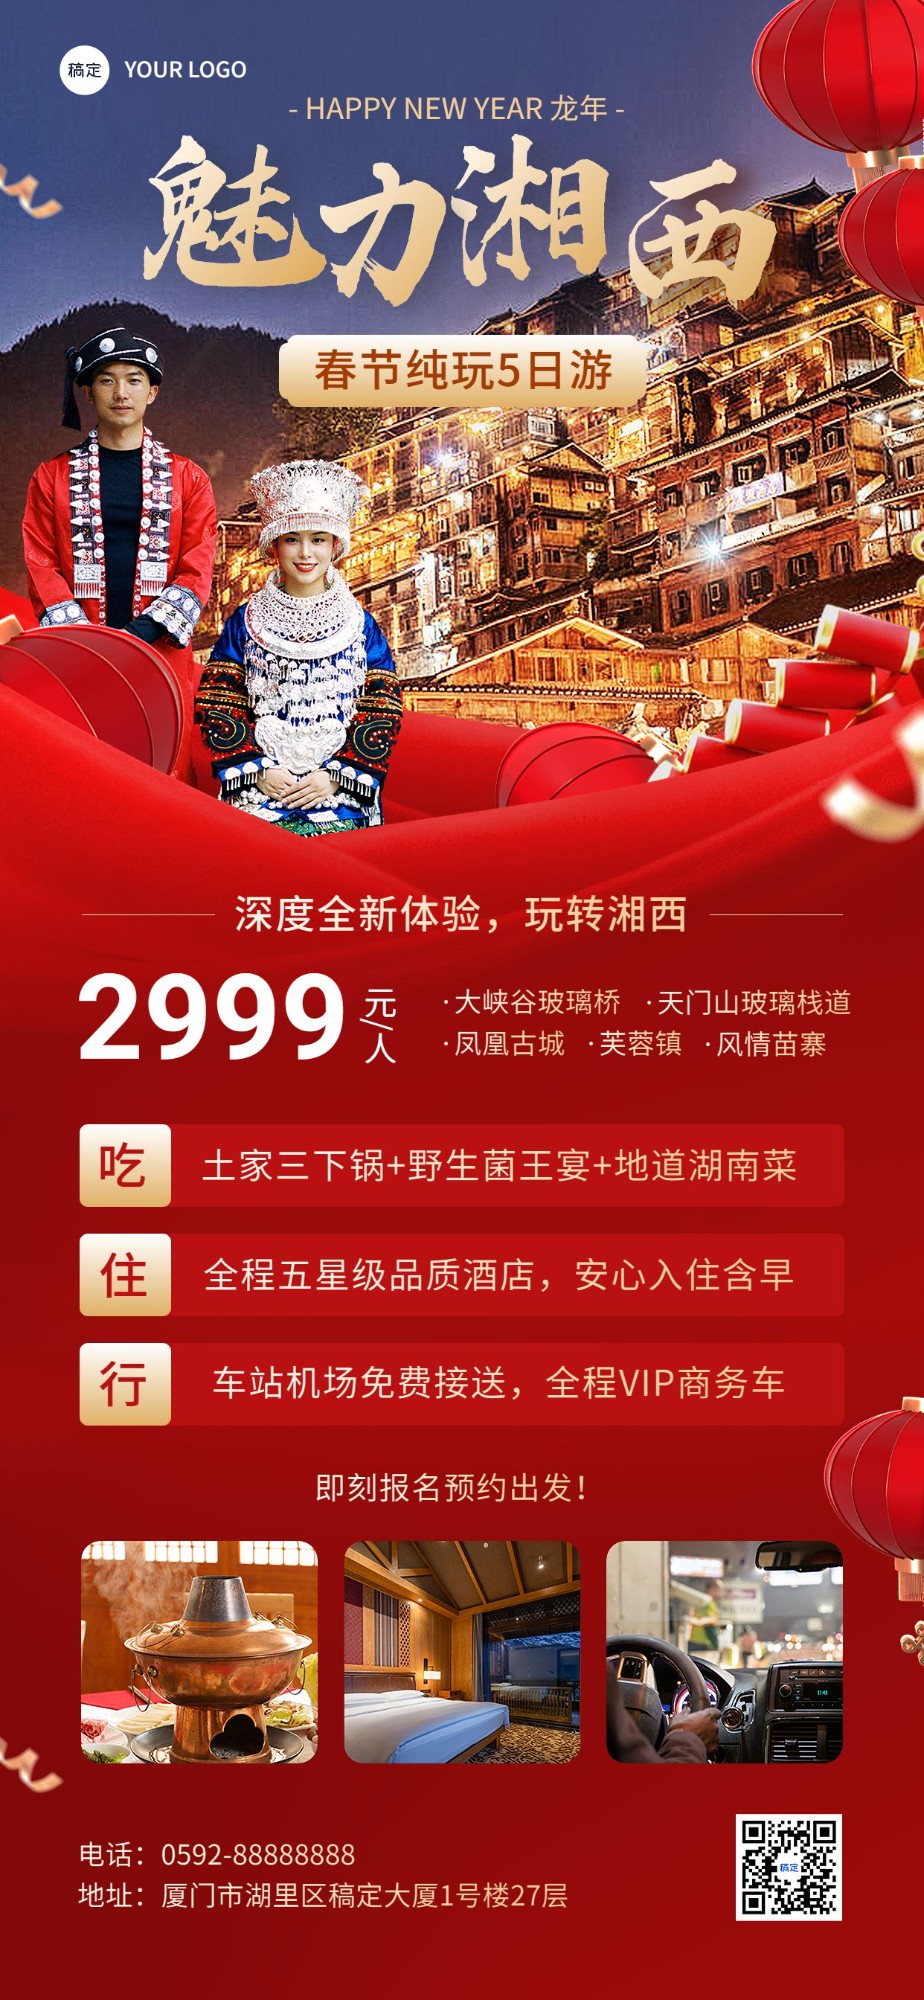 旅游出行春节旅行社魅力湘西线路营销宣传全屏竖版海报